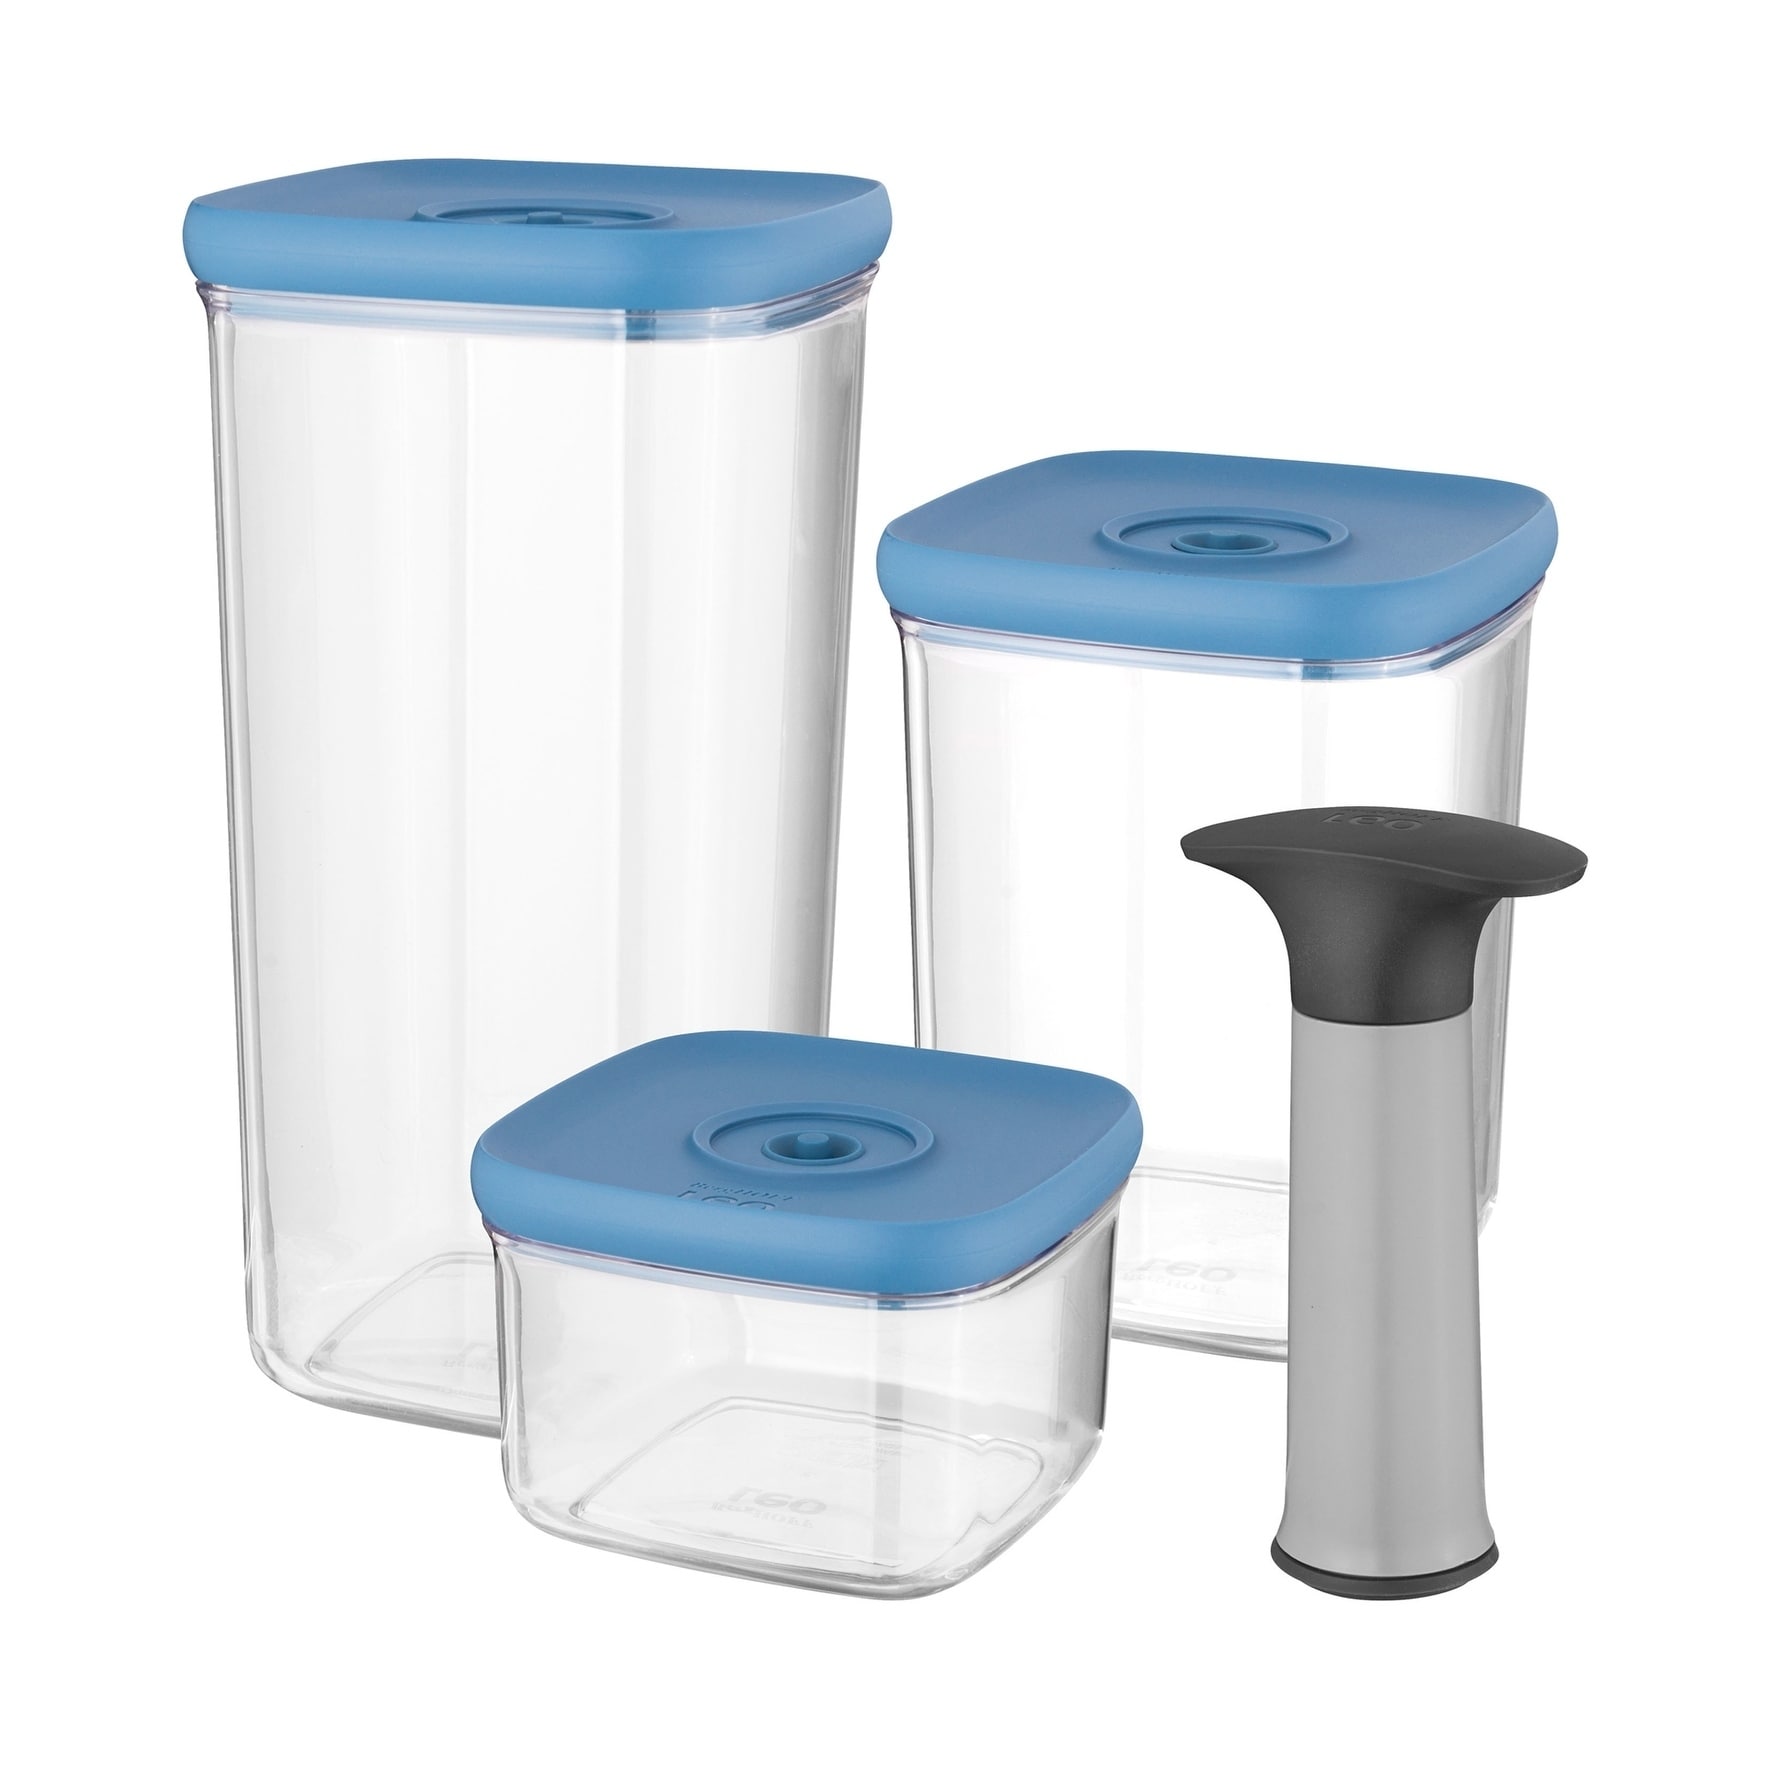 BergHOFF Leo 4-Piece Vacuum Food Container Set - Blue